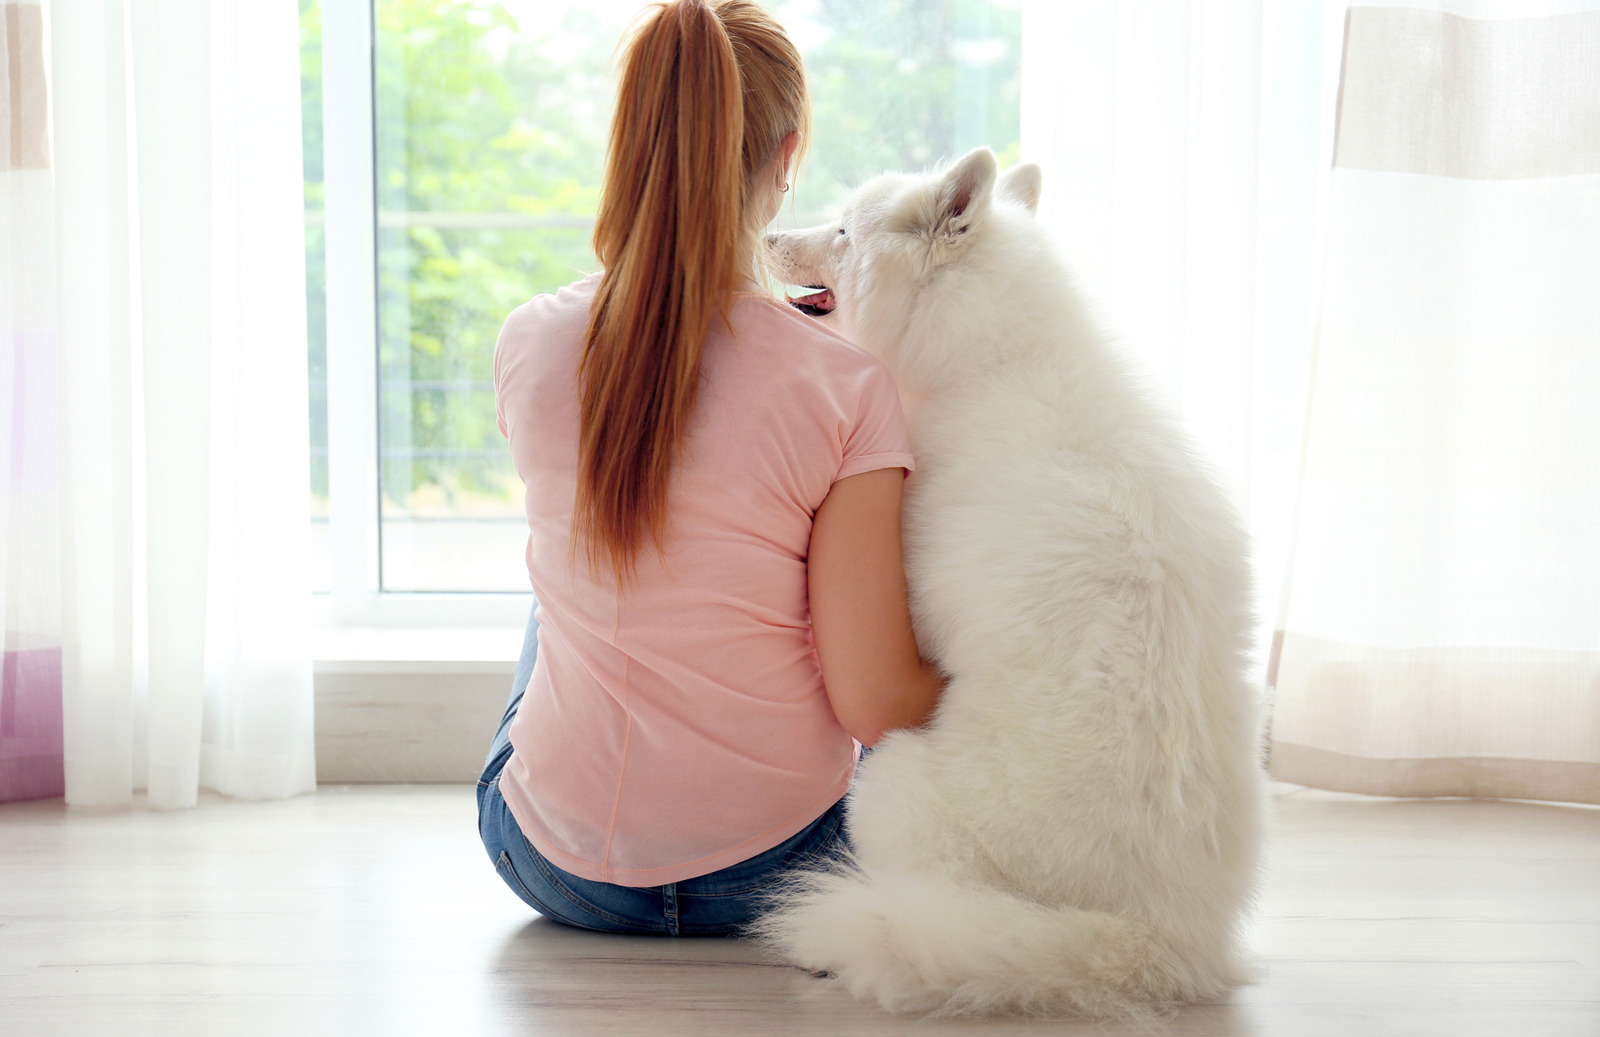 Meisje en witte hond zitten op de vloer voor schuifraam, meisje denkt over kost van een verzekering voor haar hond